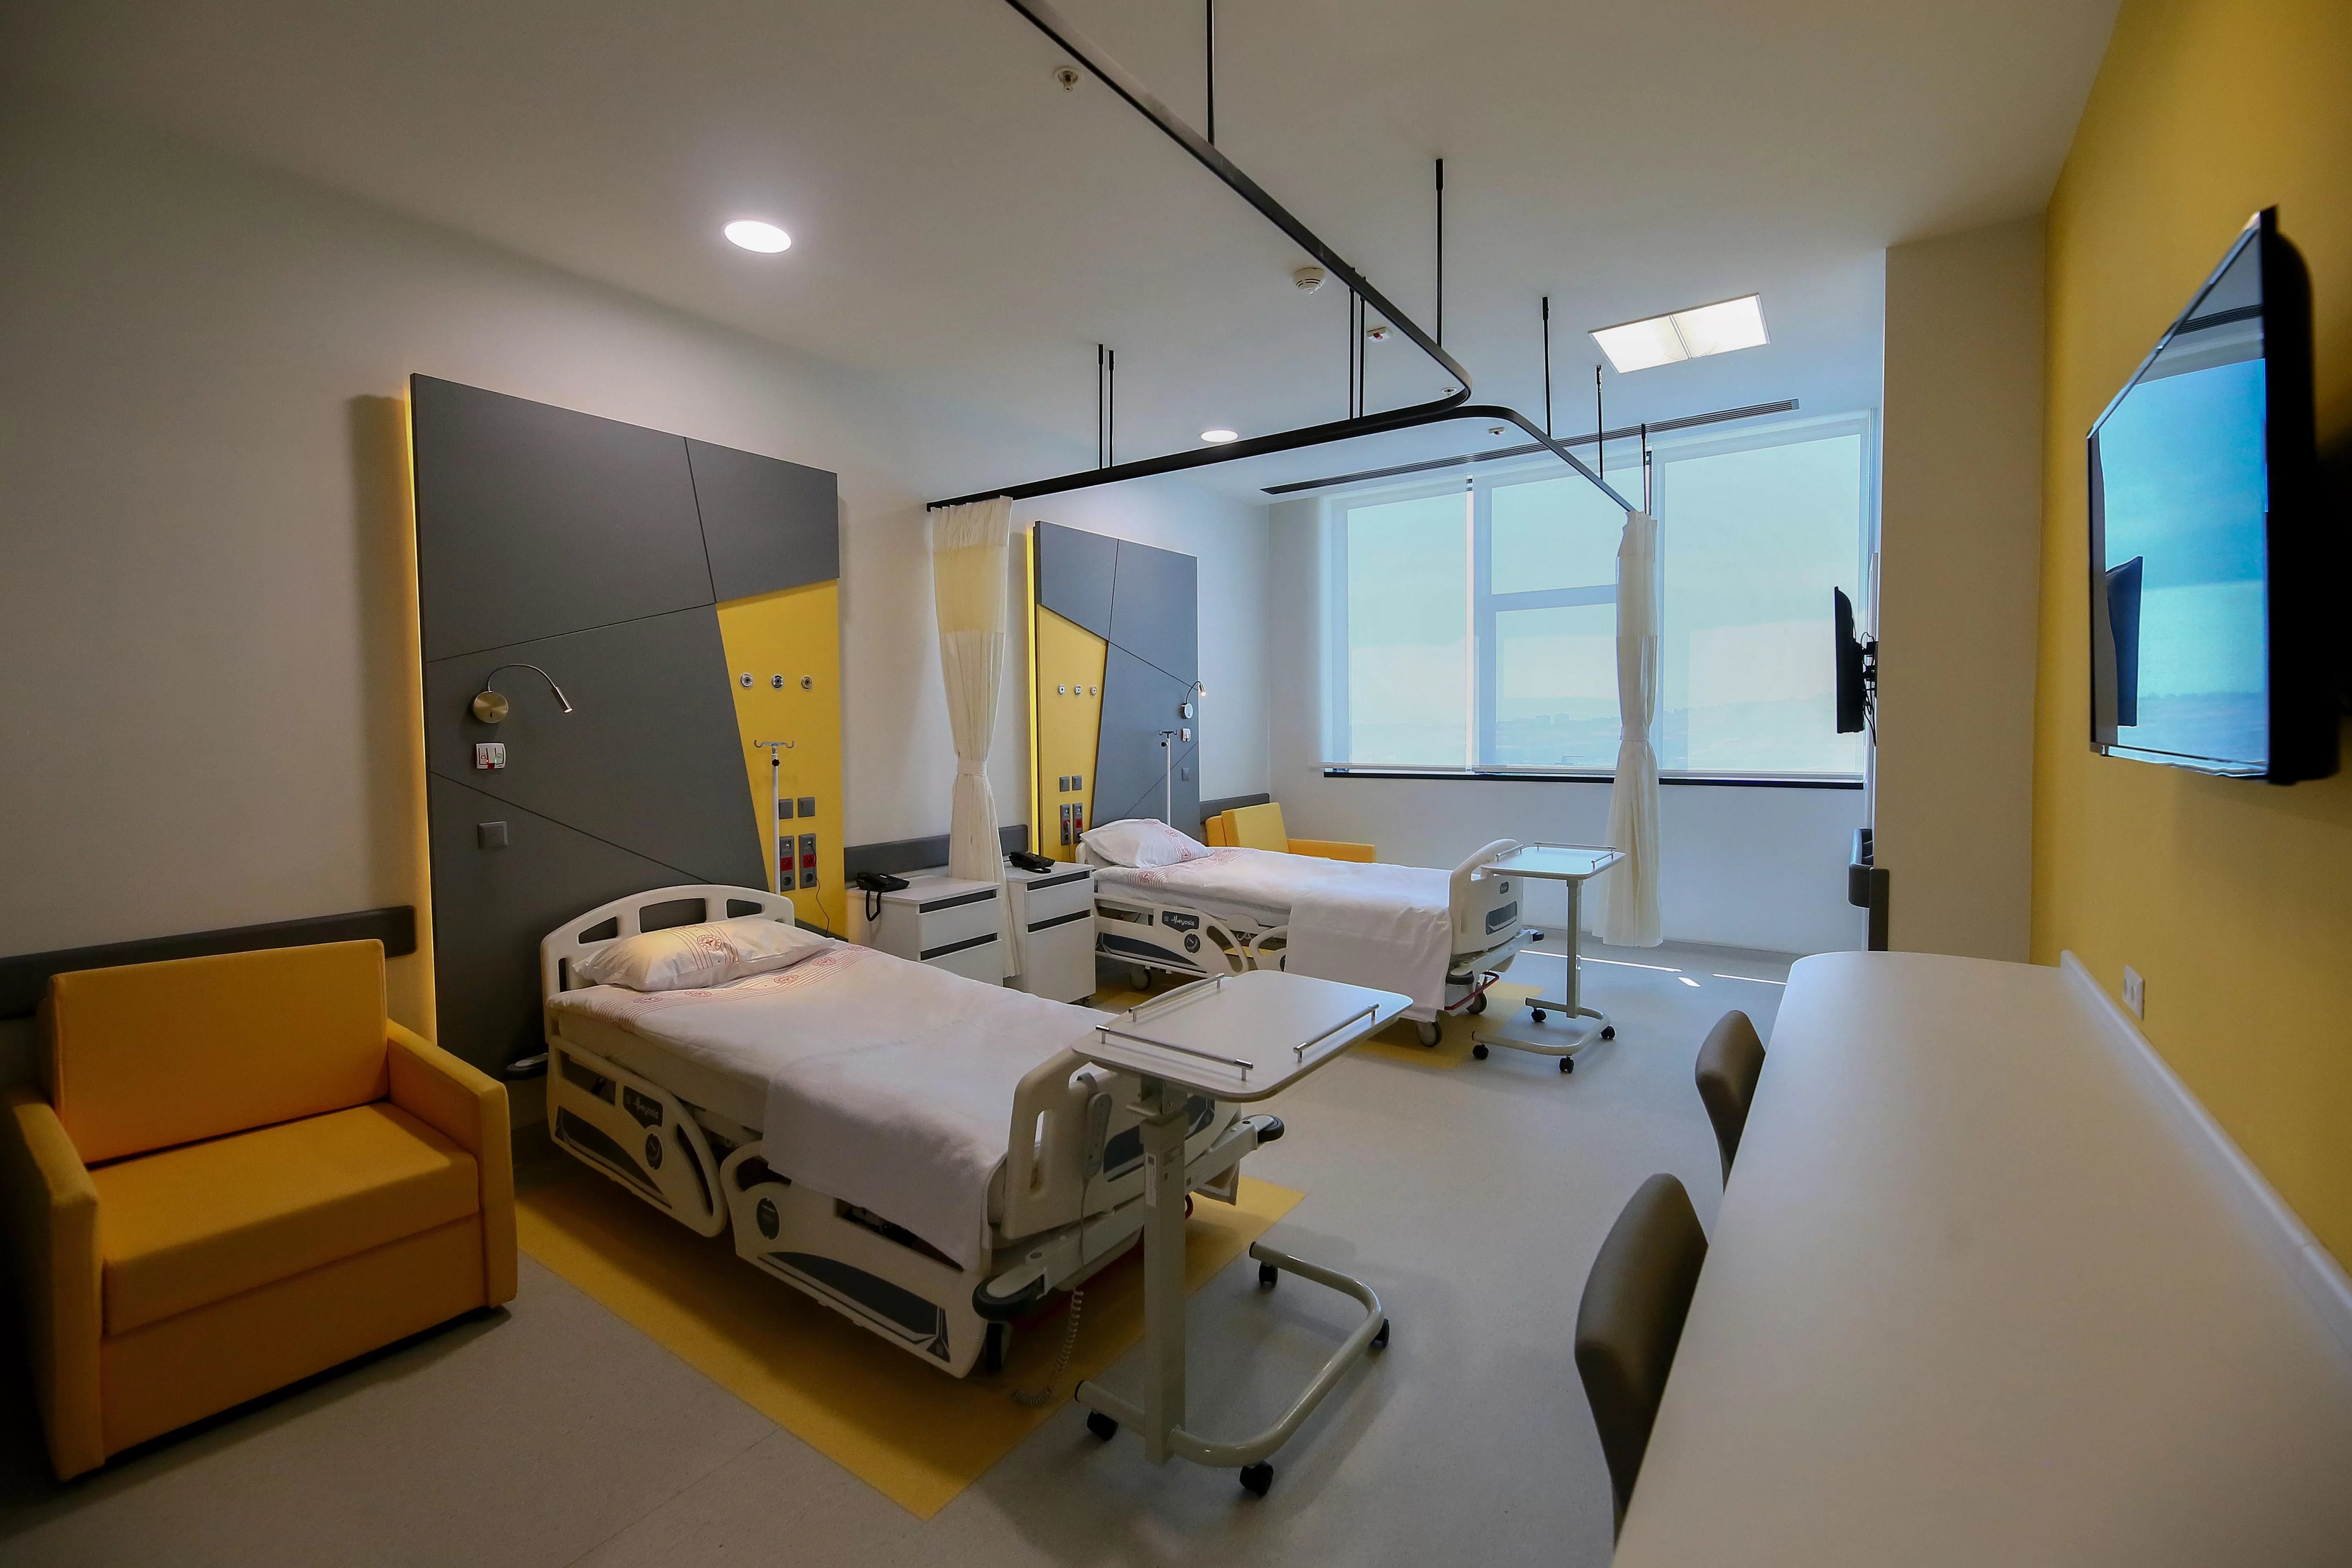 İzmir'in Bayraklı ilçesinde bulunan ve 2.060 yatak kapasitesine sahip İzmir Şehir Hastanesi, bugün itibarıyla hasta kabulüne başladı. 